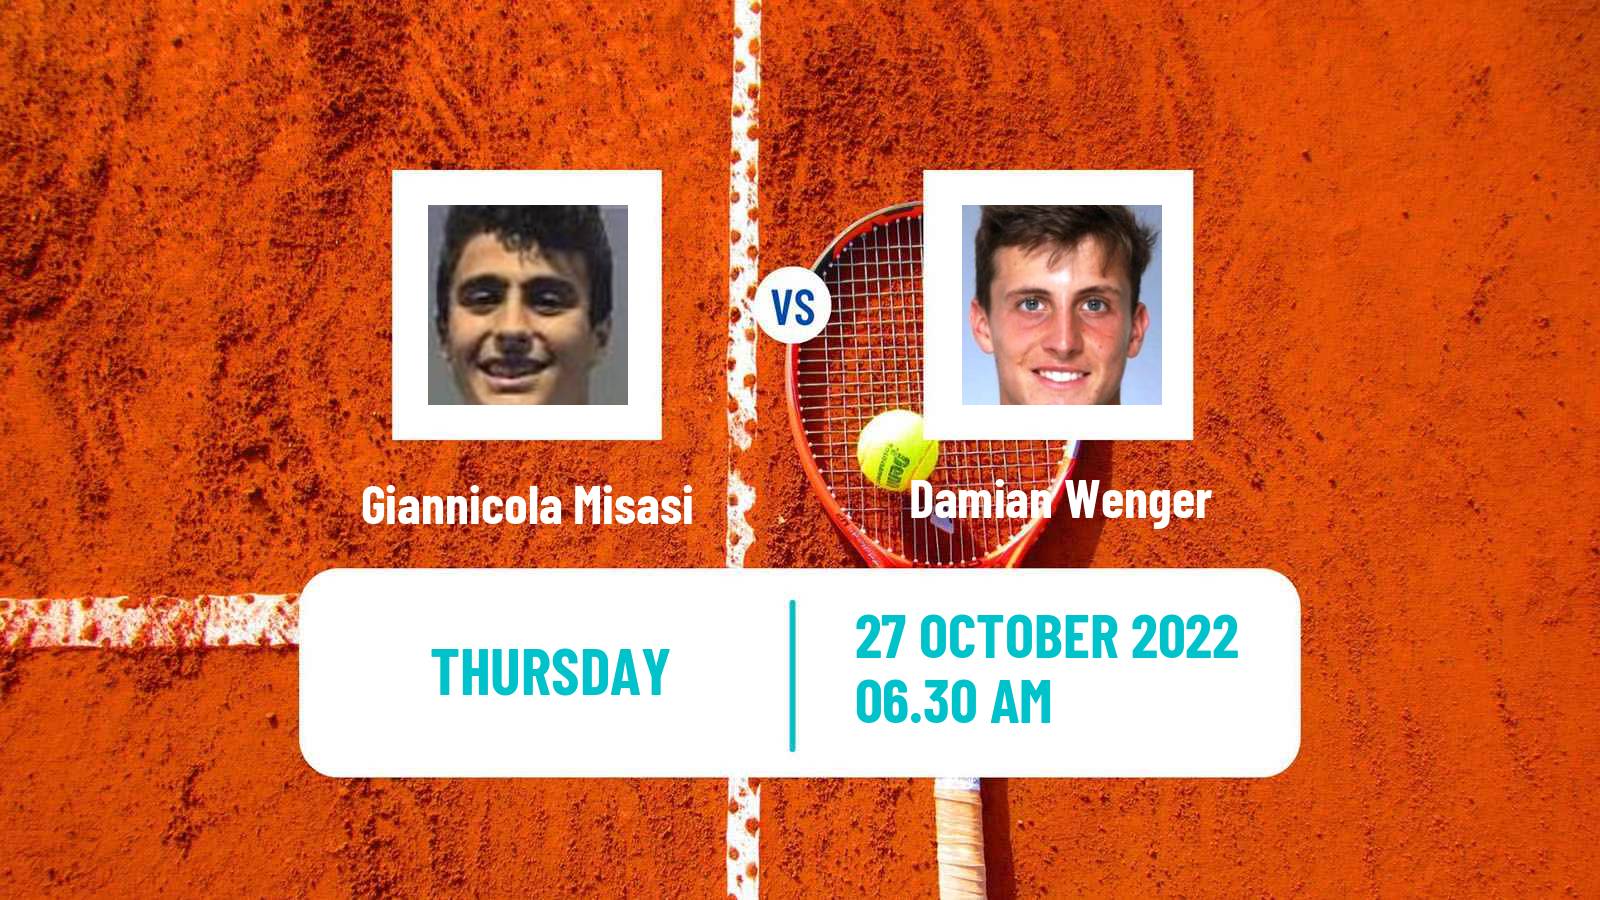 Tennis ITF Tournaments Giannicola Misasi - Damian Wenger